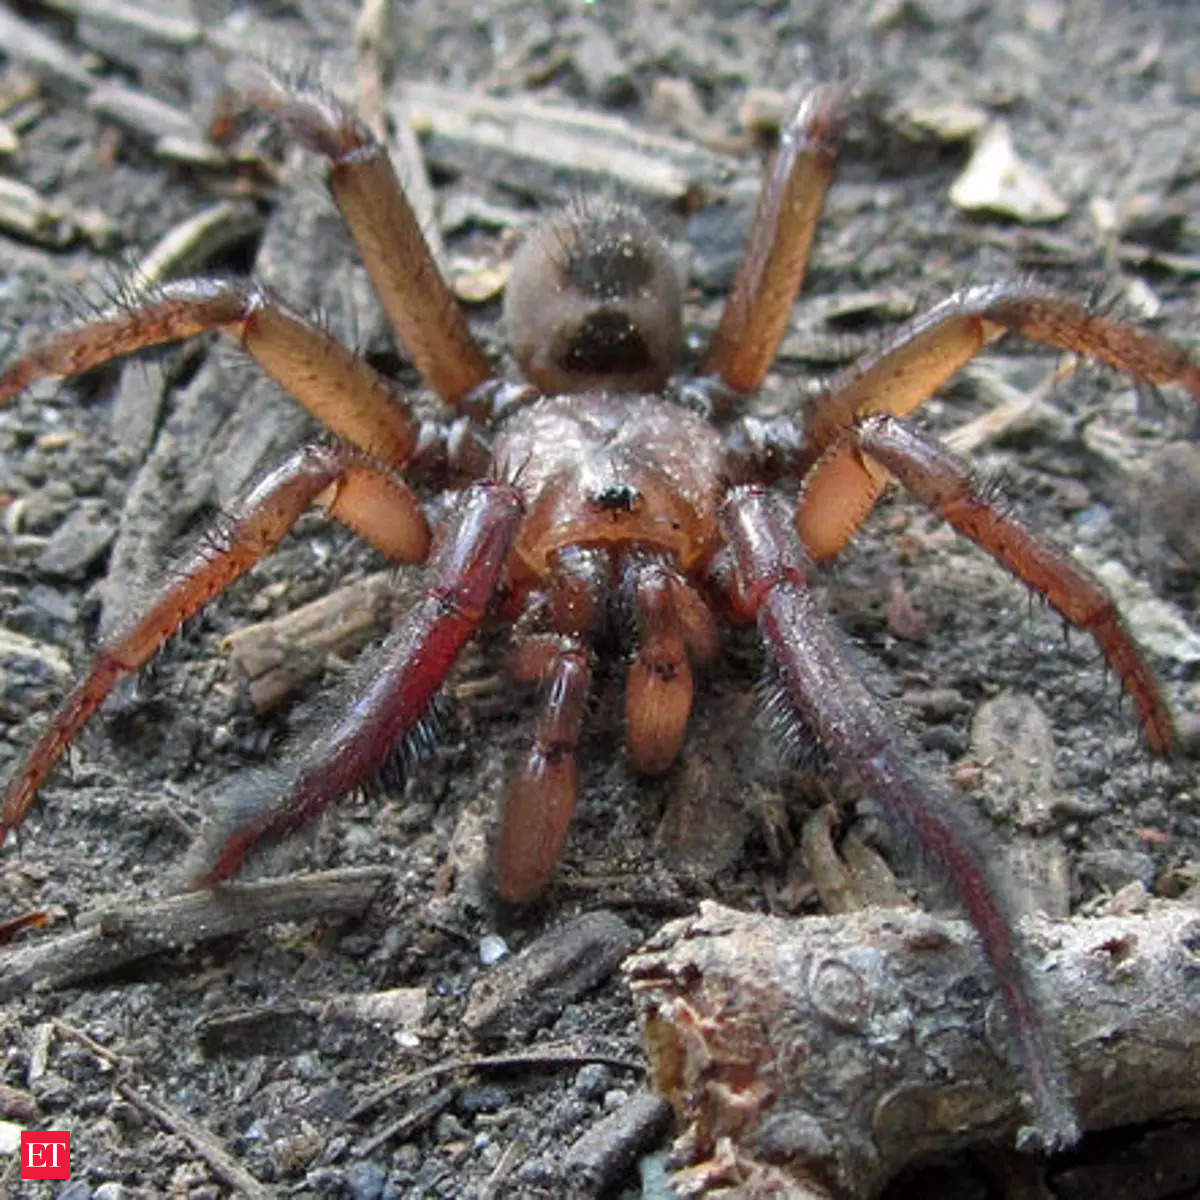 Trapdoor Spider: Giant species of Trapdoor spider spotted in ...